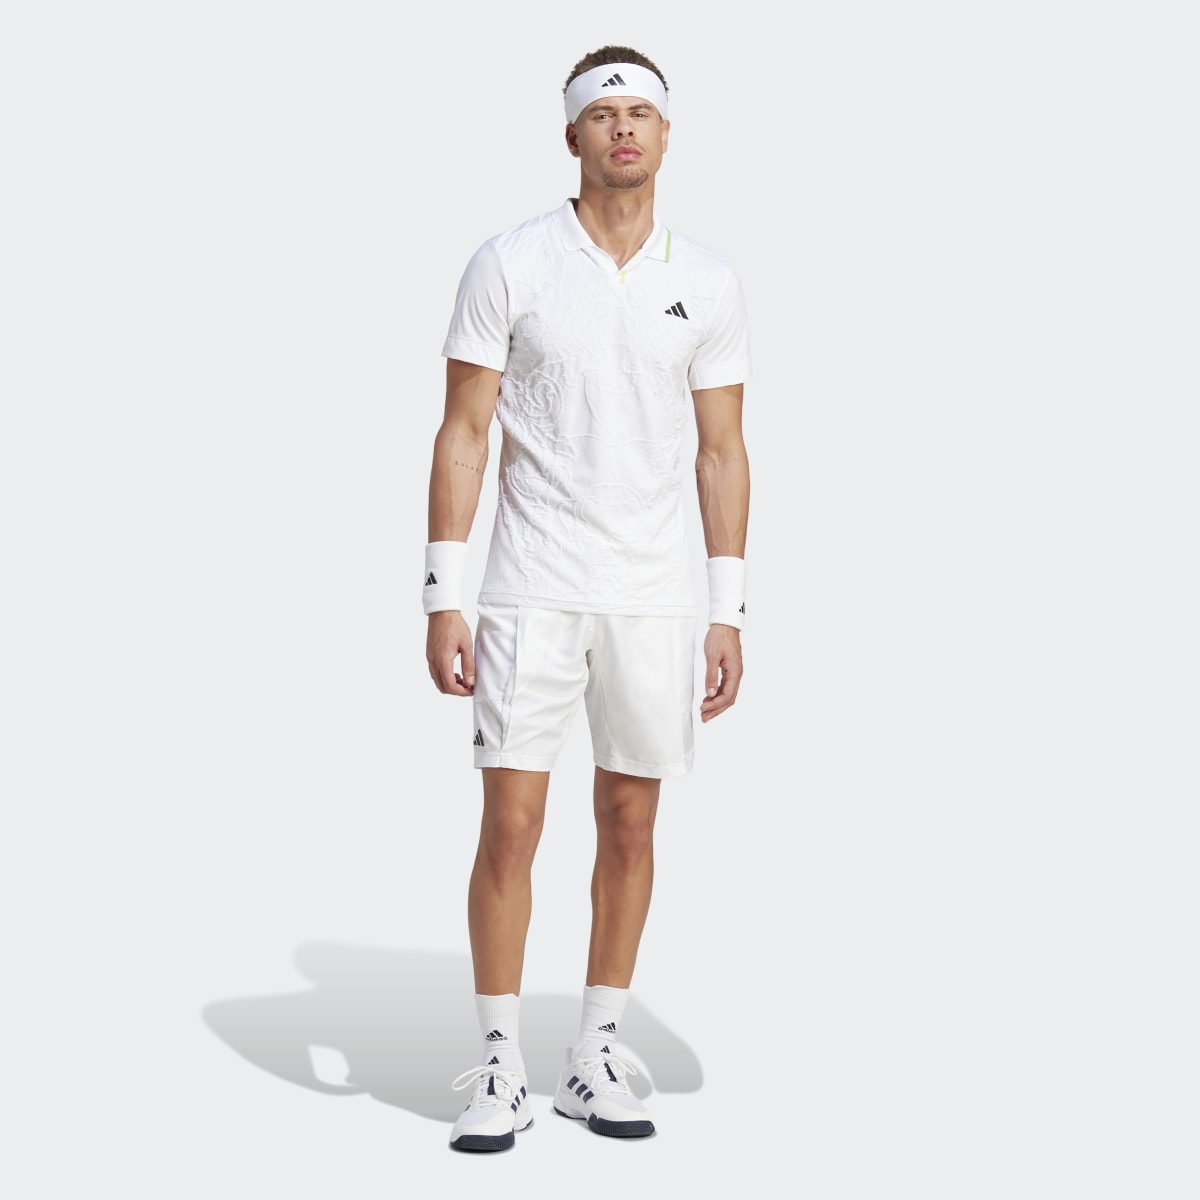 Adidas AEROREADY FreeLift Pro Tennis Polo Shirt. 9